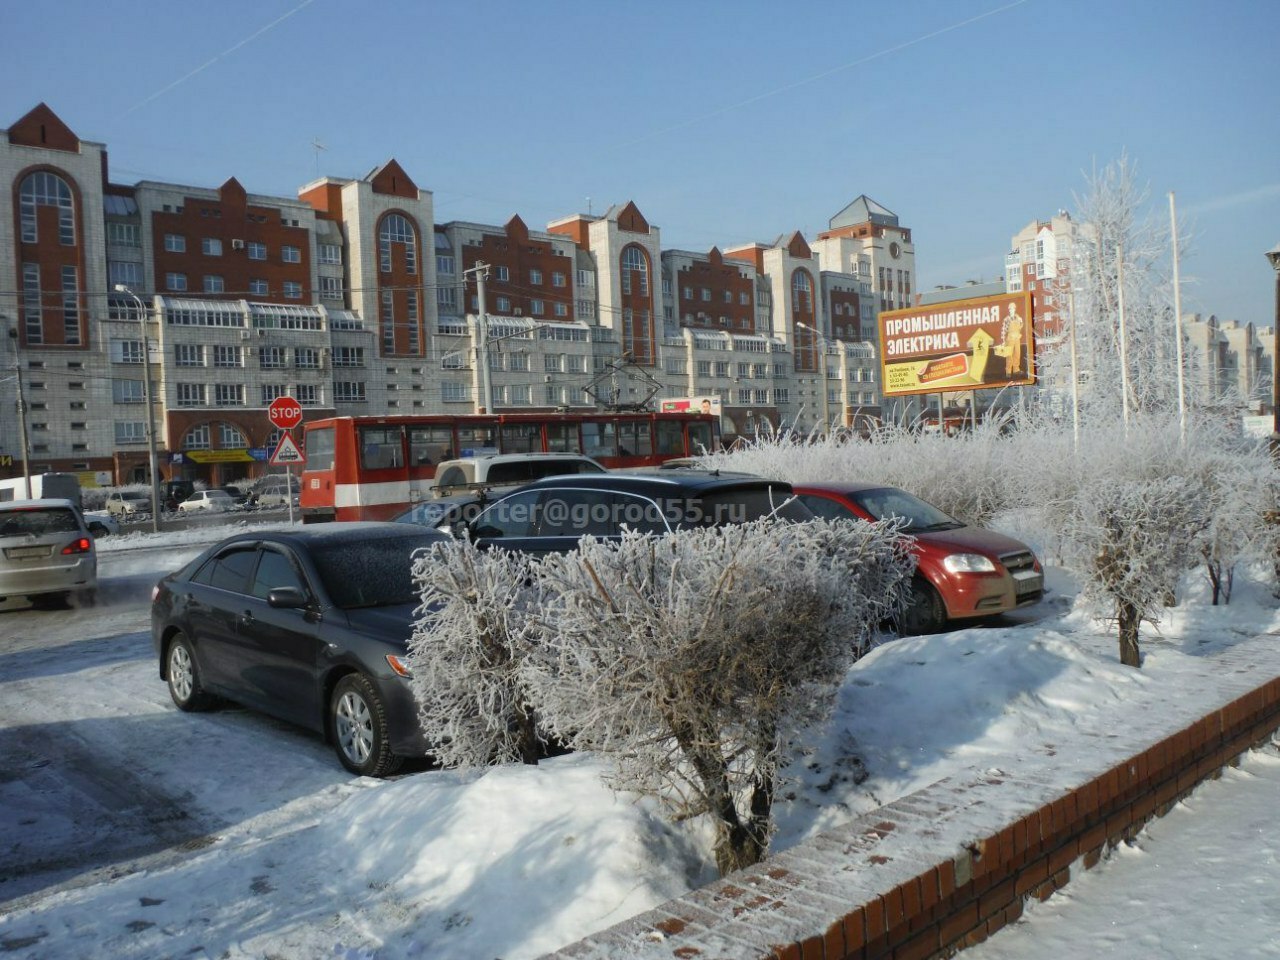 Из-за морозов 20 новых больших автобусов не могут доехать до Омска